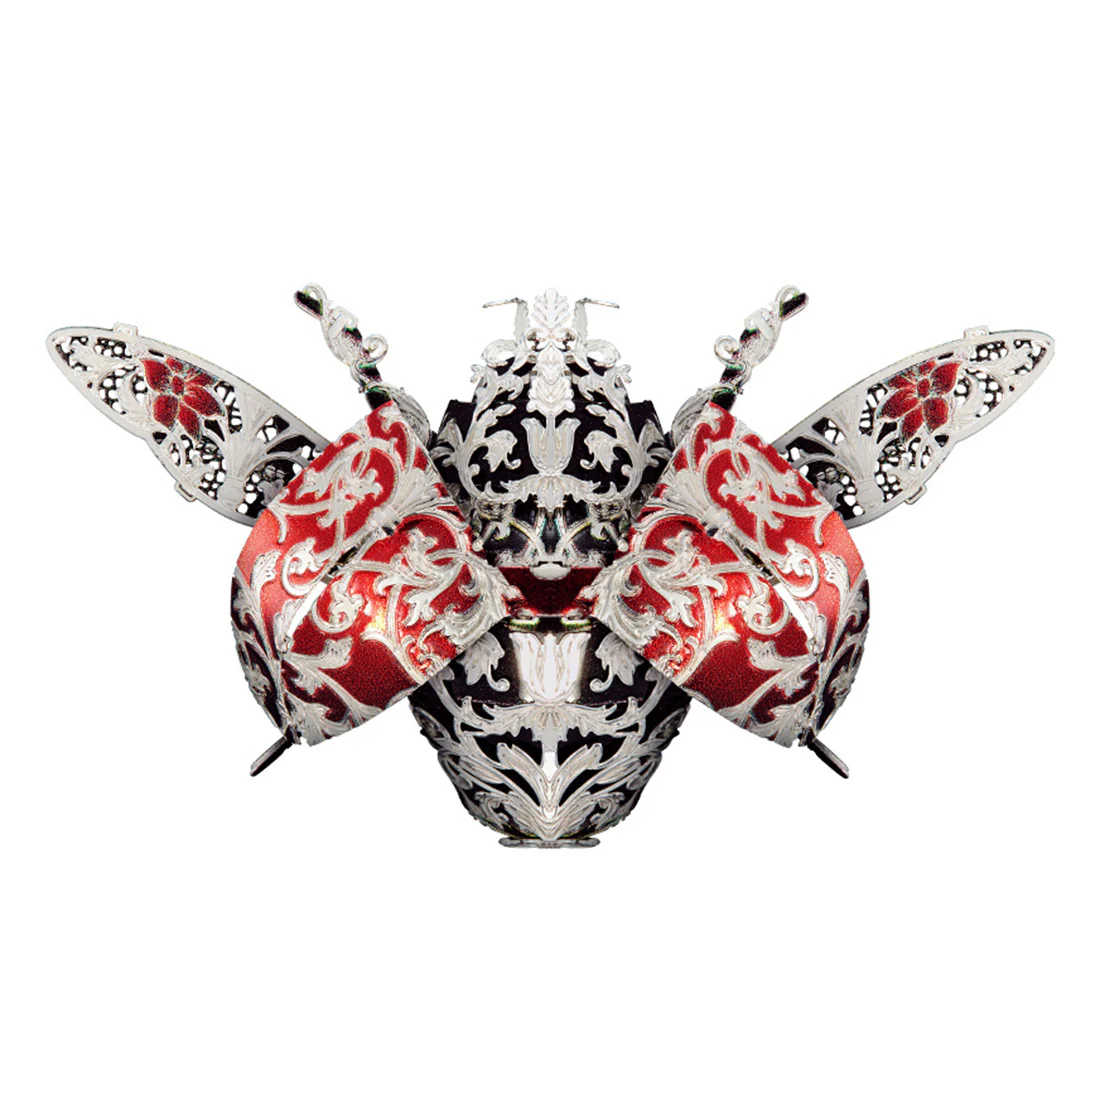 3Dメタル昆虫モデルキット DIY組み立てパズル レーザーカットジグソープレイおもちゃ